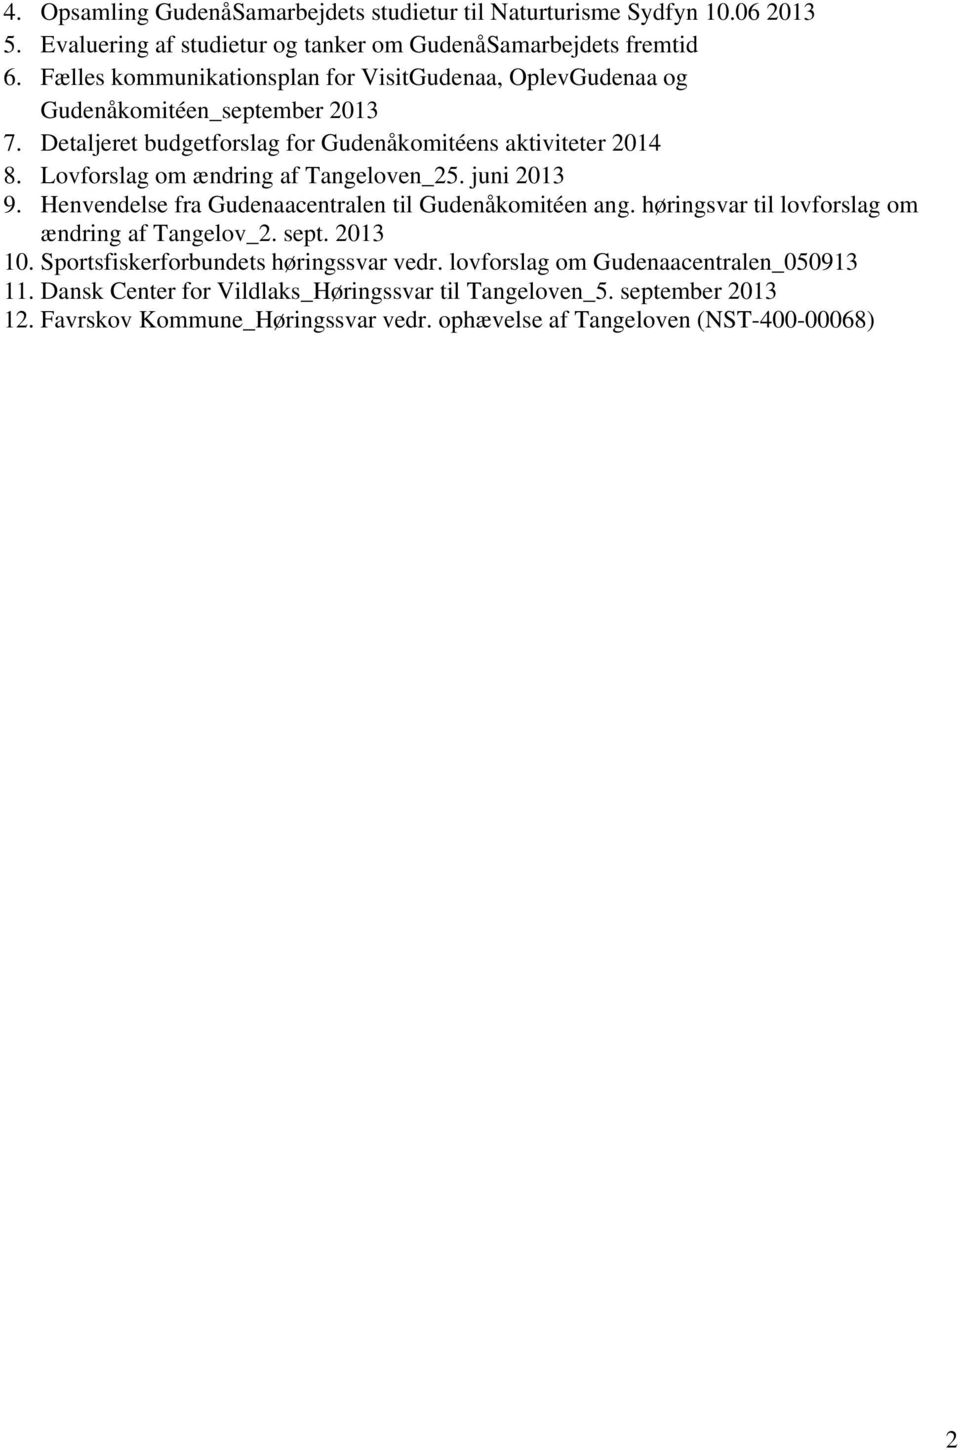 Lovforslag om ændring af Tangeloven_25. juni 2013 9. Henvendelse fra Gudenaacentralen til Gudenåkomitéen ang. høringsvar til lovforslag om ændring af Tangelov_2. sept. 2013 10.